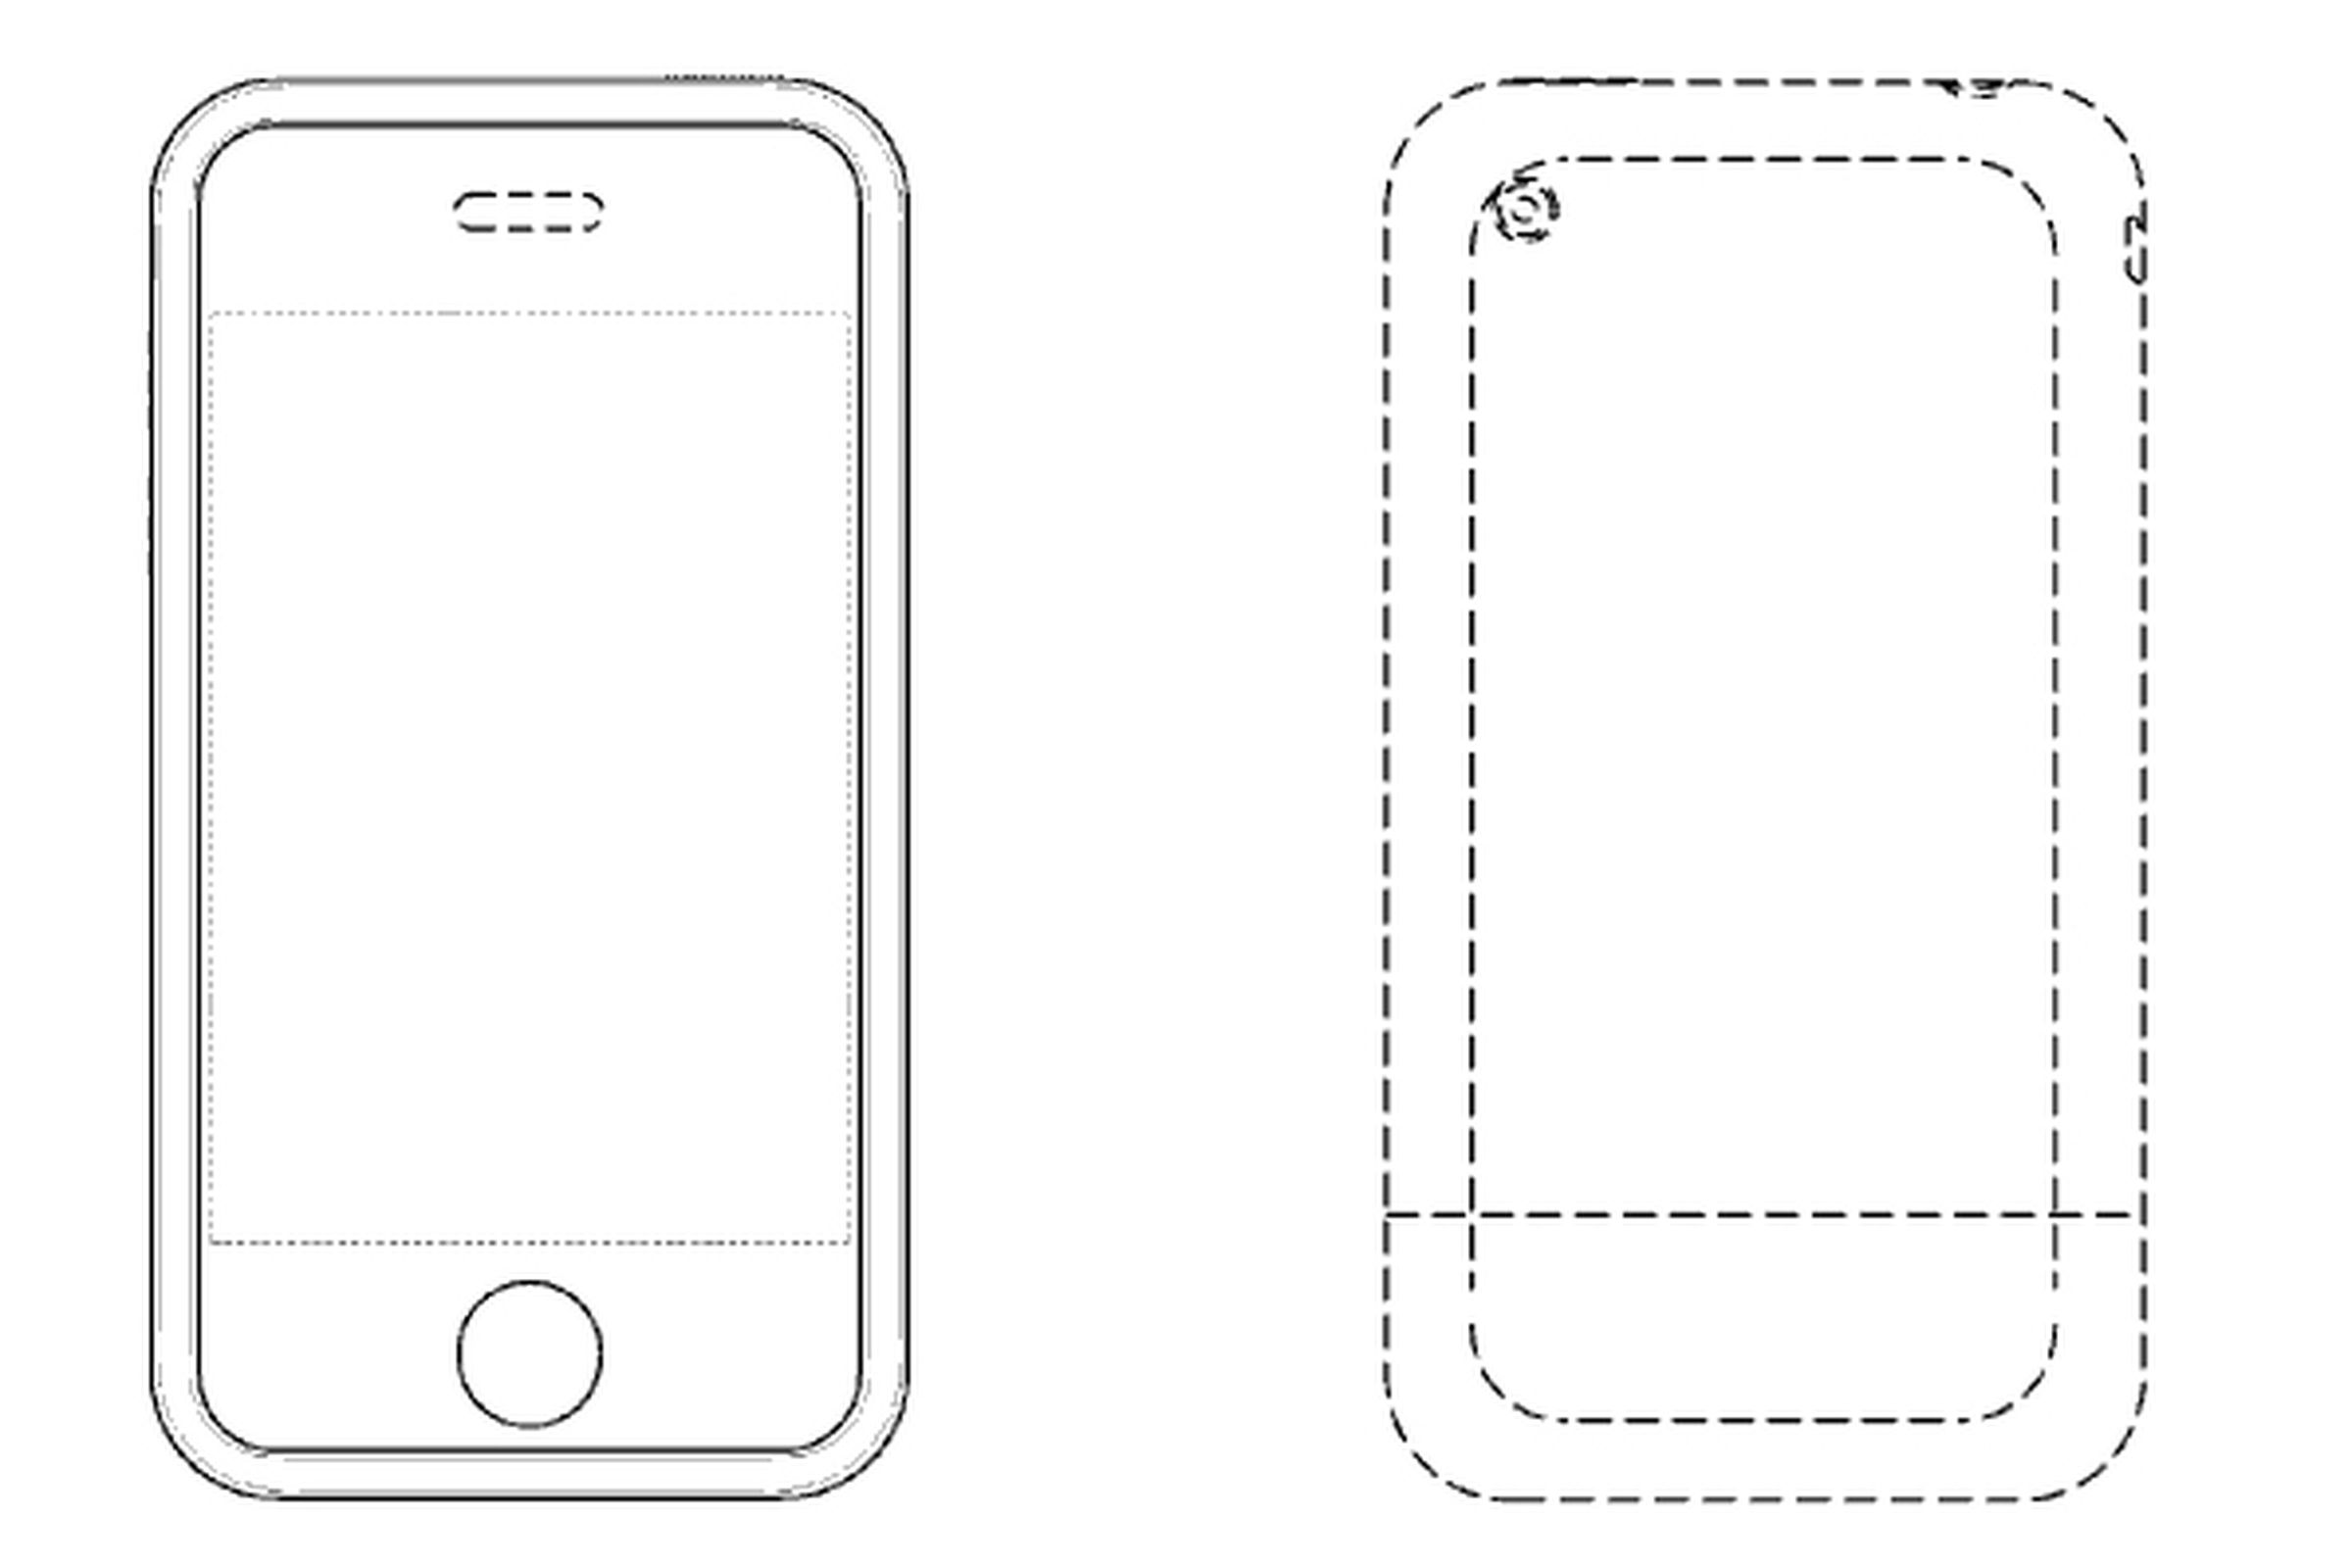 iPhone design patent image